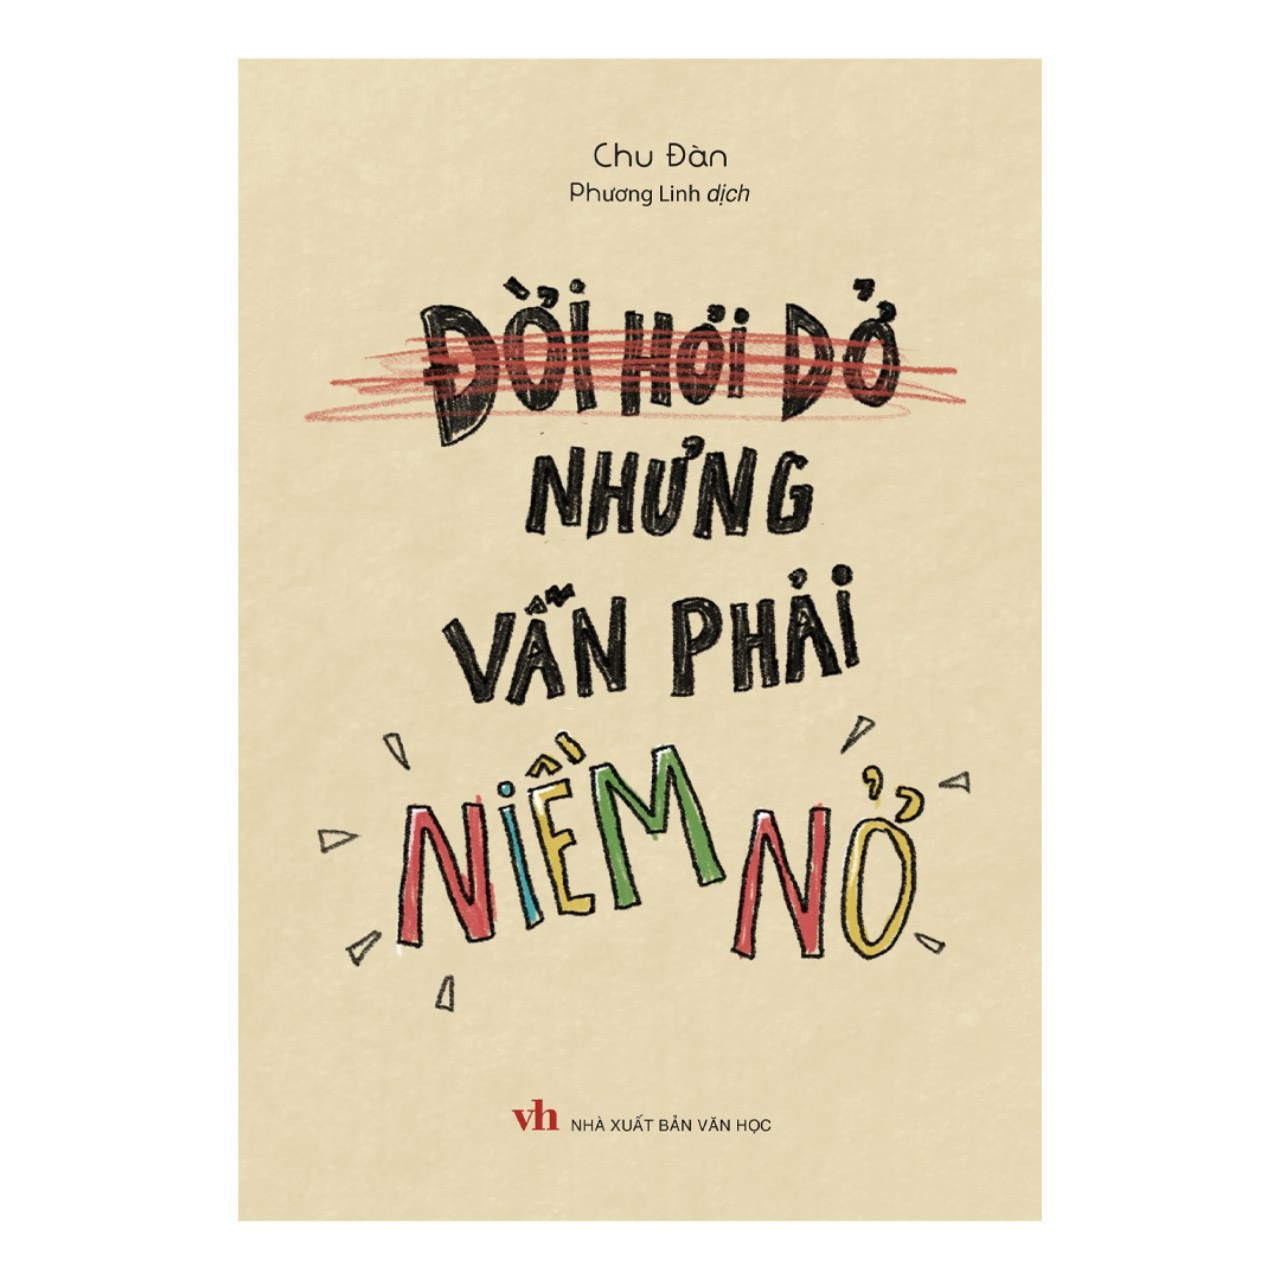 ĐỜI HƠI DỞ NHƯNG VẪN PHẢI NIỀM NỞ – Chu Đàn – Phương Linh dịch - Minh Long Book  – NXB Văn học